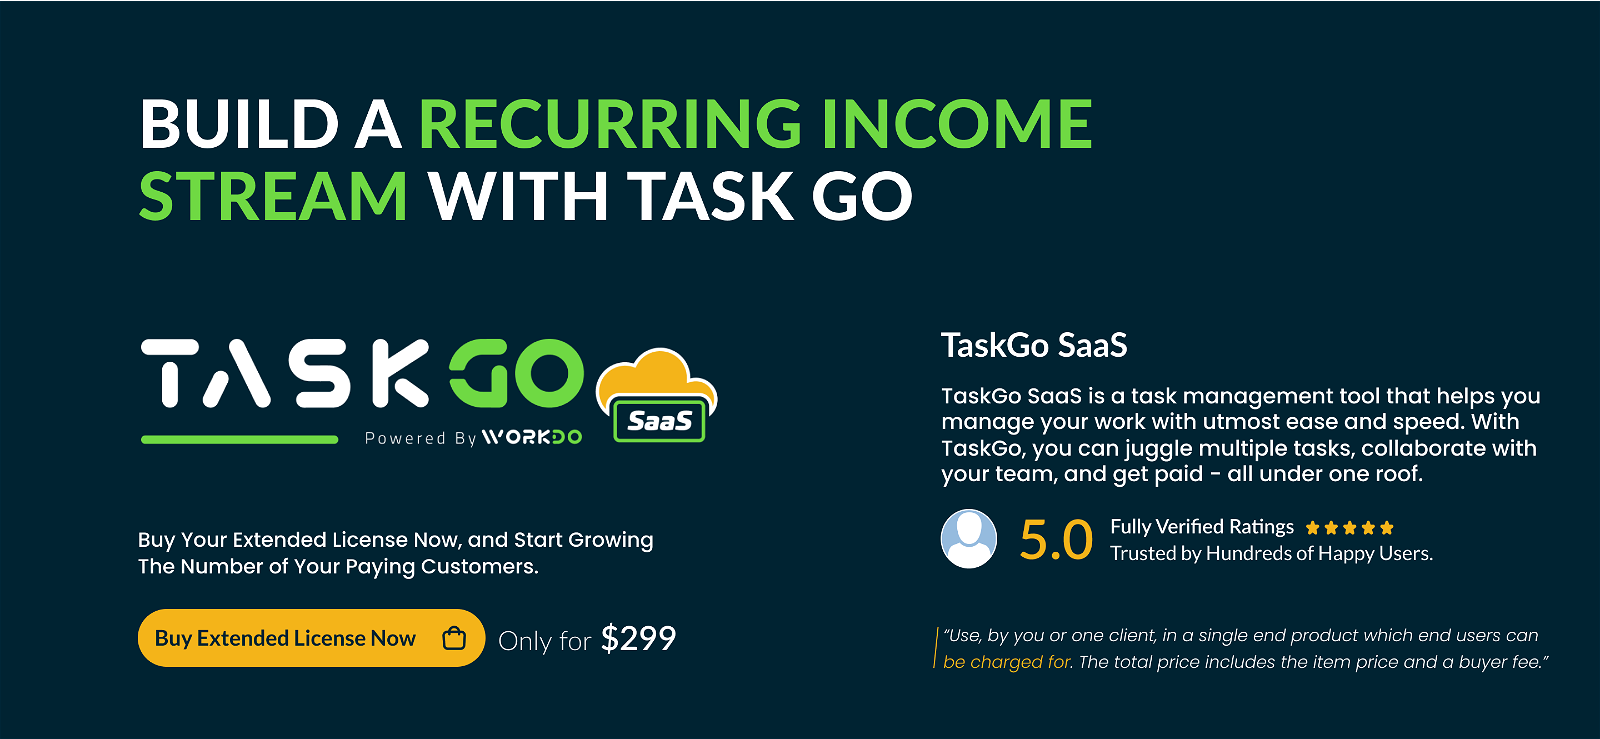 TaskGo SaaS – Tasks Management Tool - 6